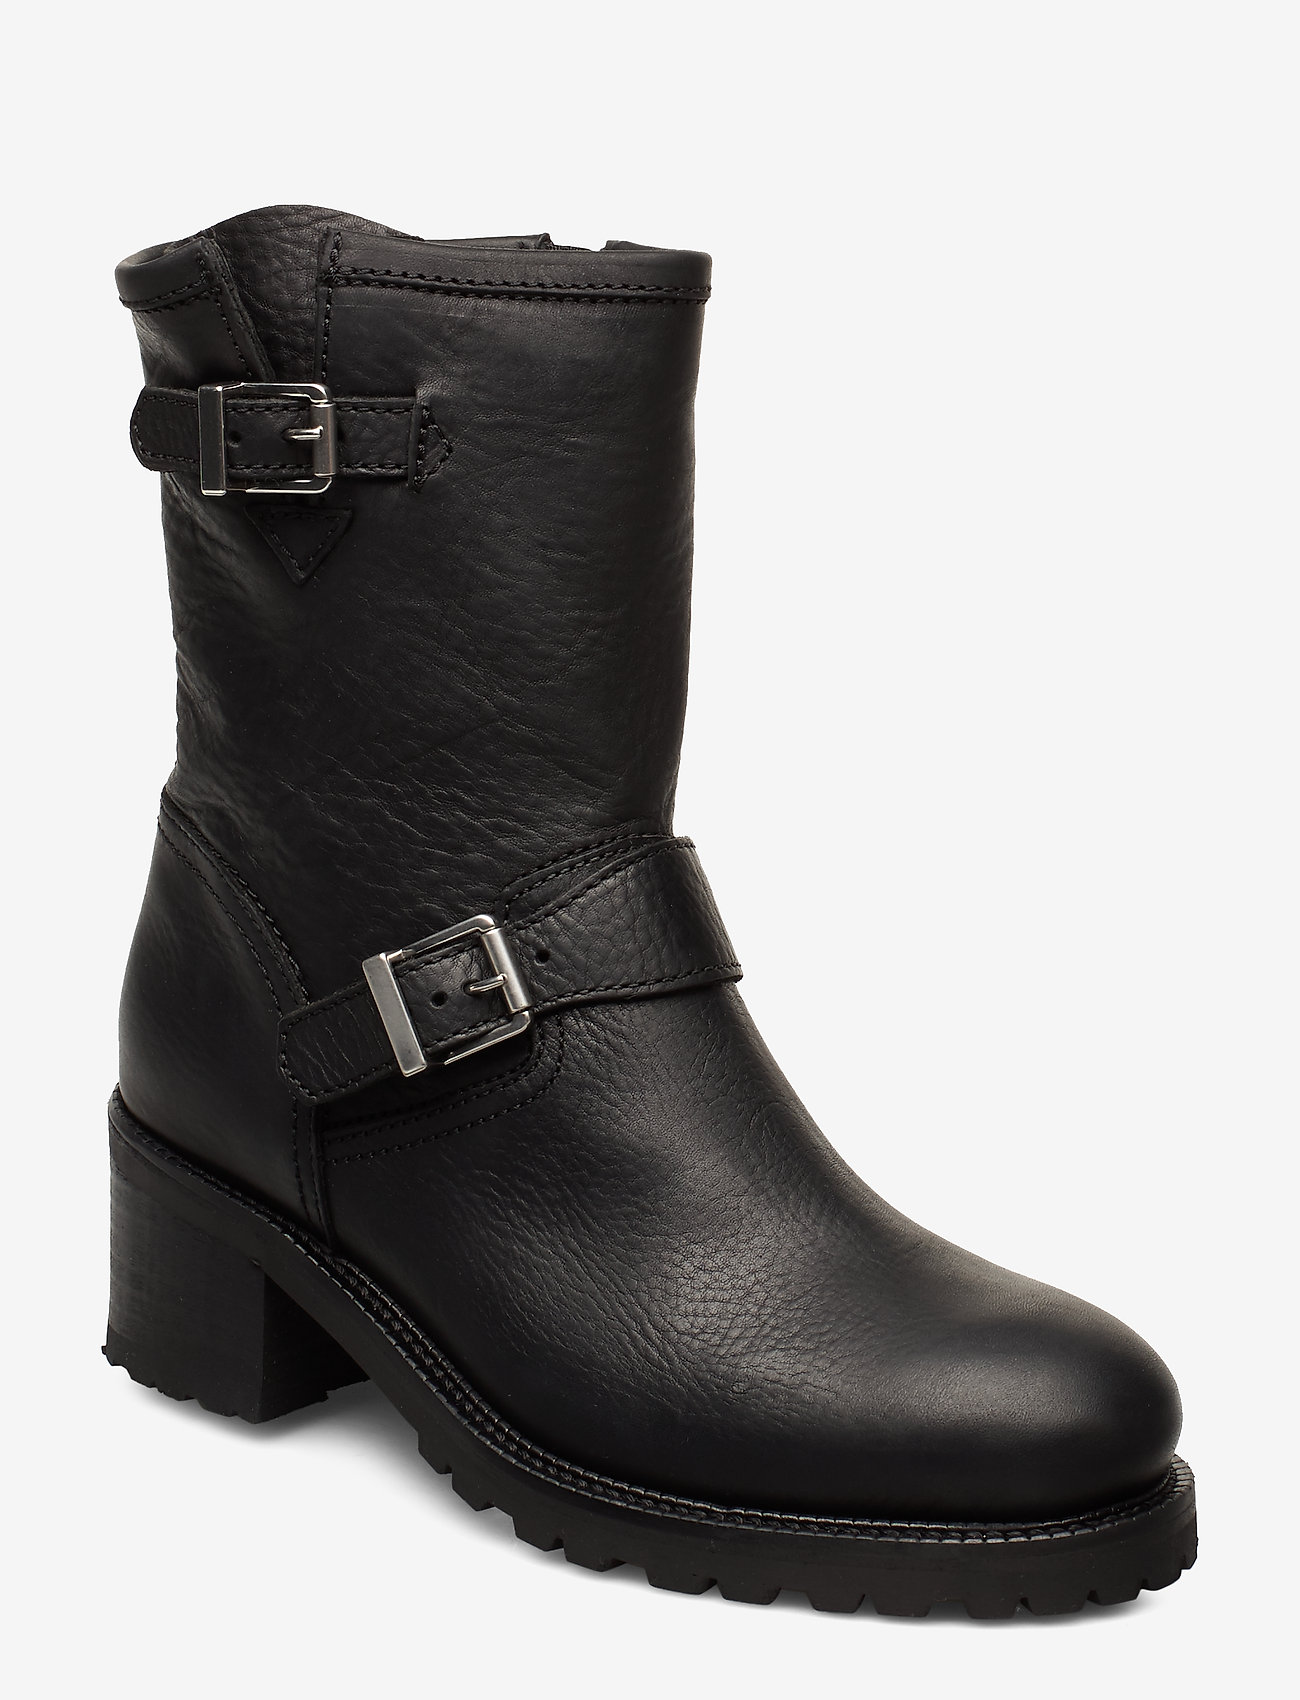 ralph lauren women's leather boots